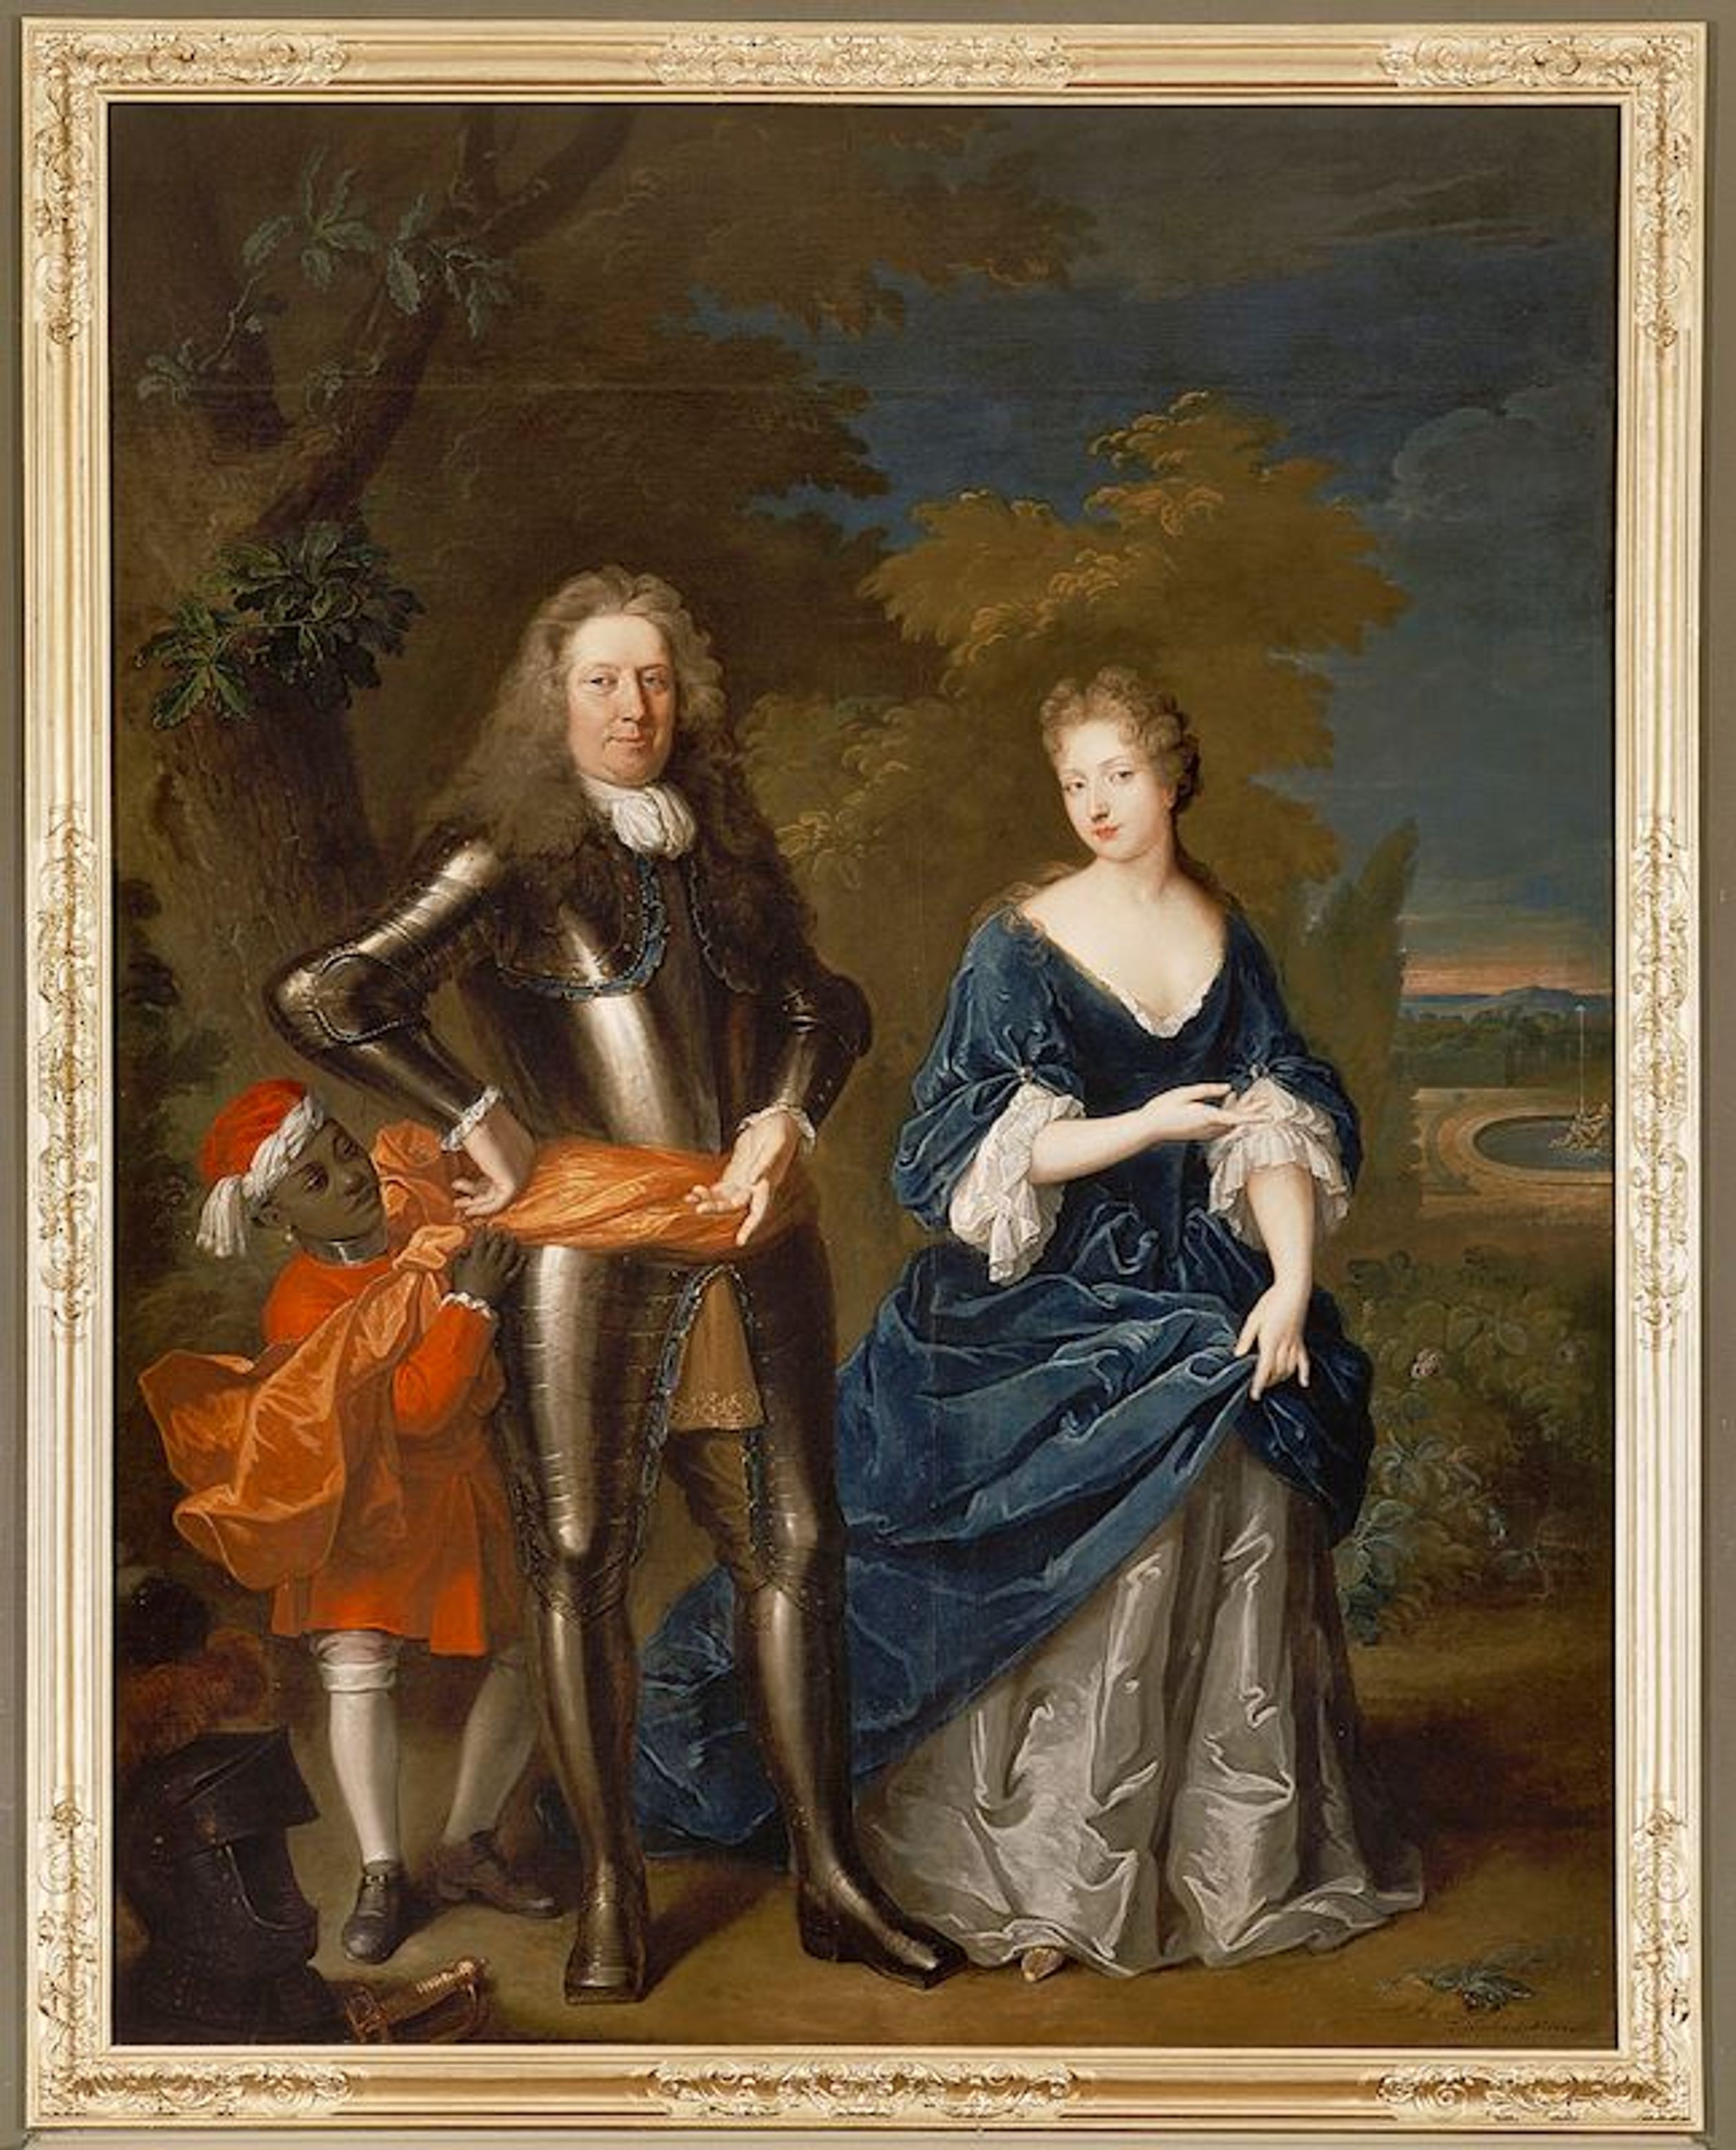 Jacob en Jacoba van Wassenaer met een zwarte man, c. 1702.